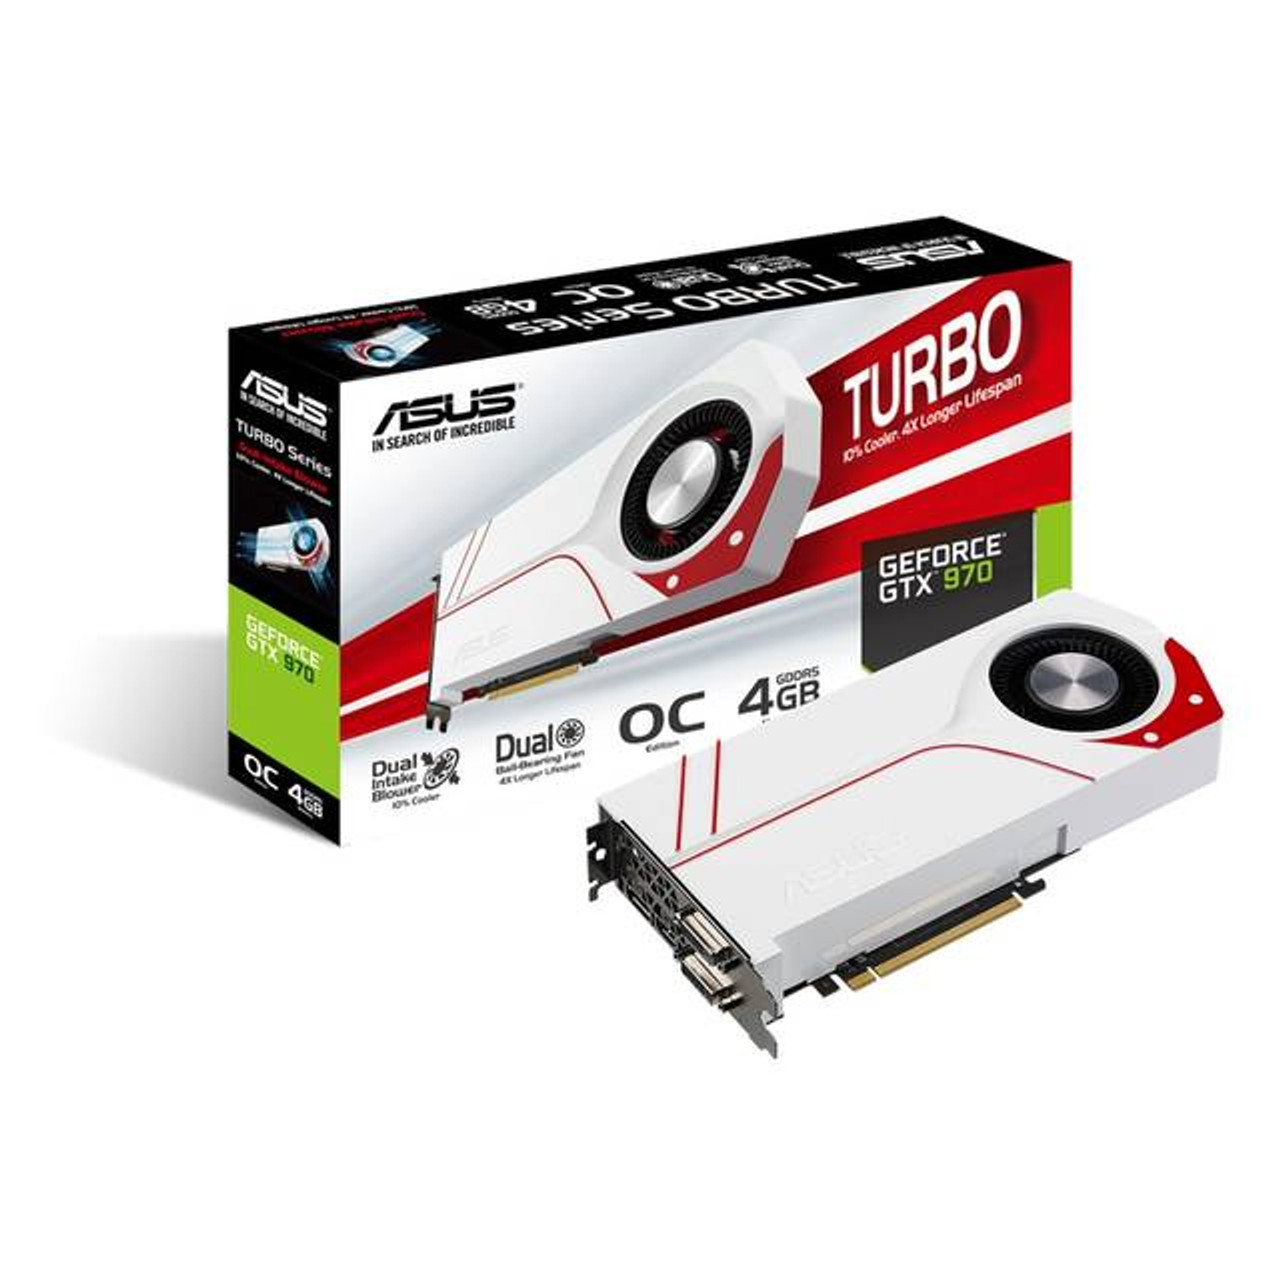 Turbo Gtx970 Oc 4gd5 Asus Nvidia Geforce Gtx 970 Oc 4gb Gddr5 2dvi Hdmi Displayport Pci Express Video Card